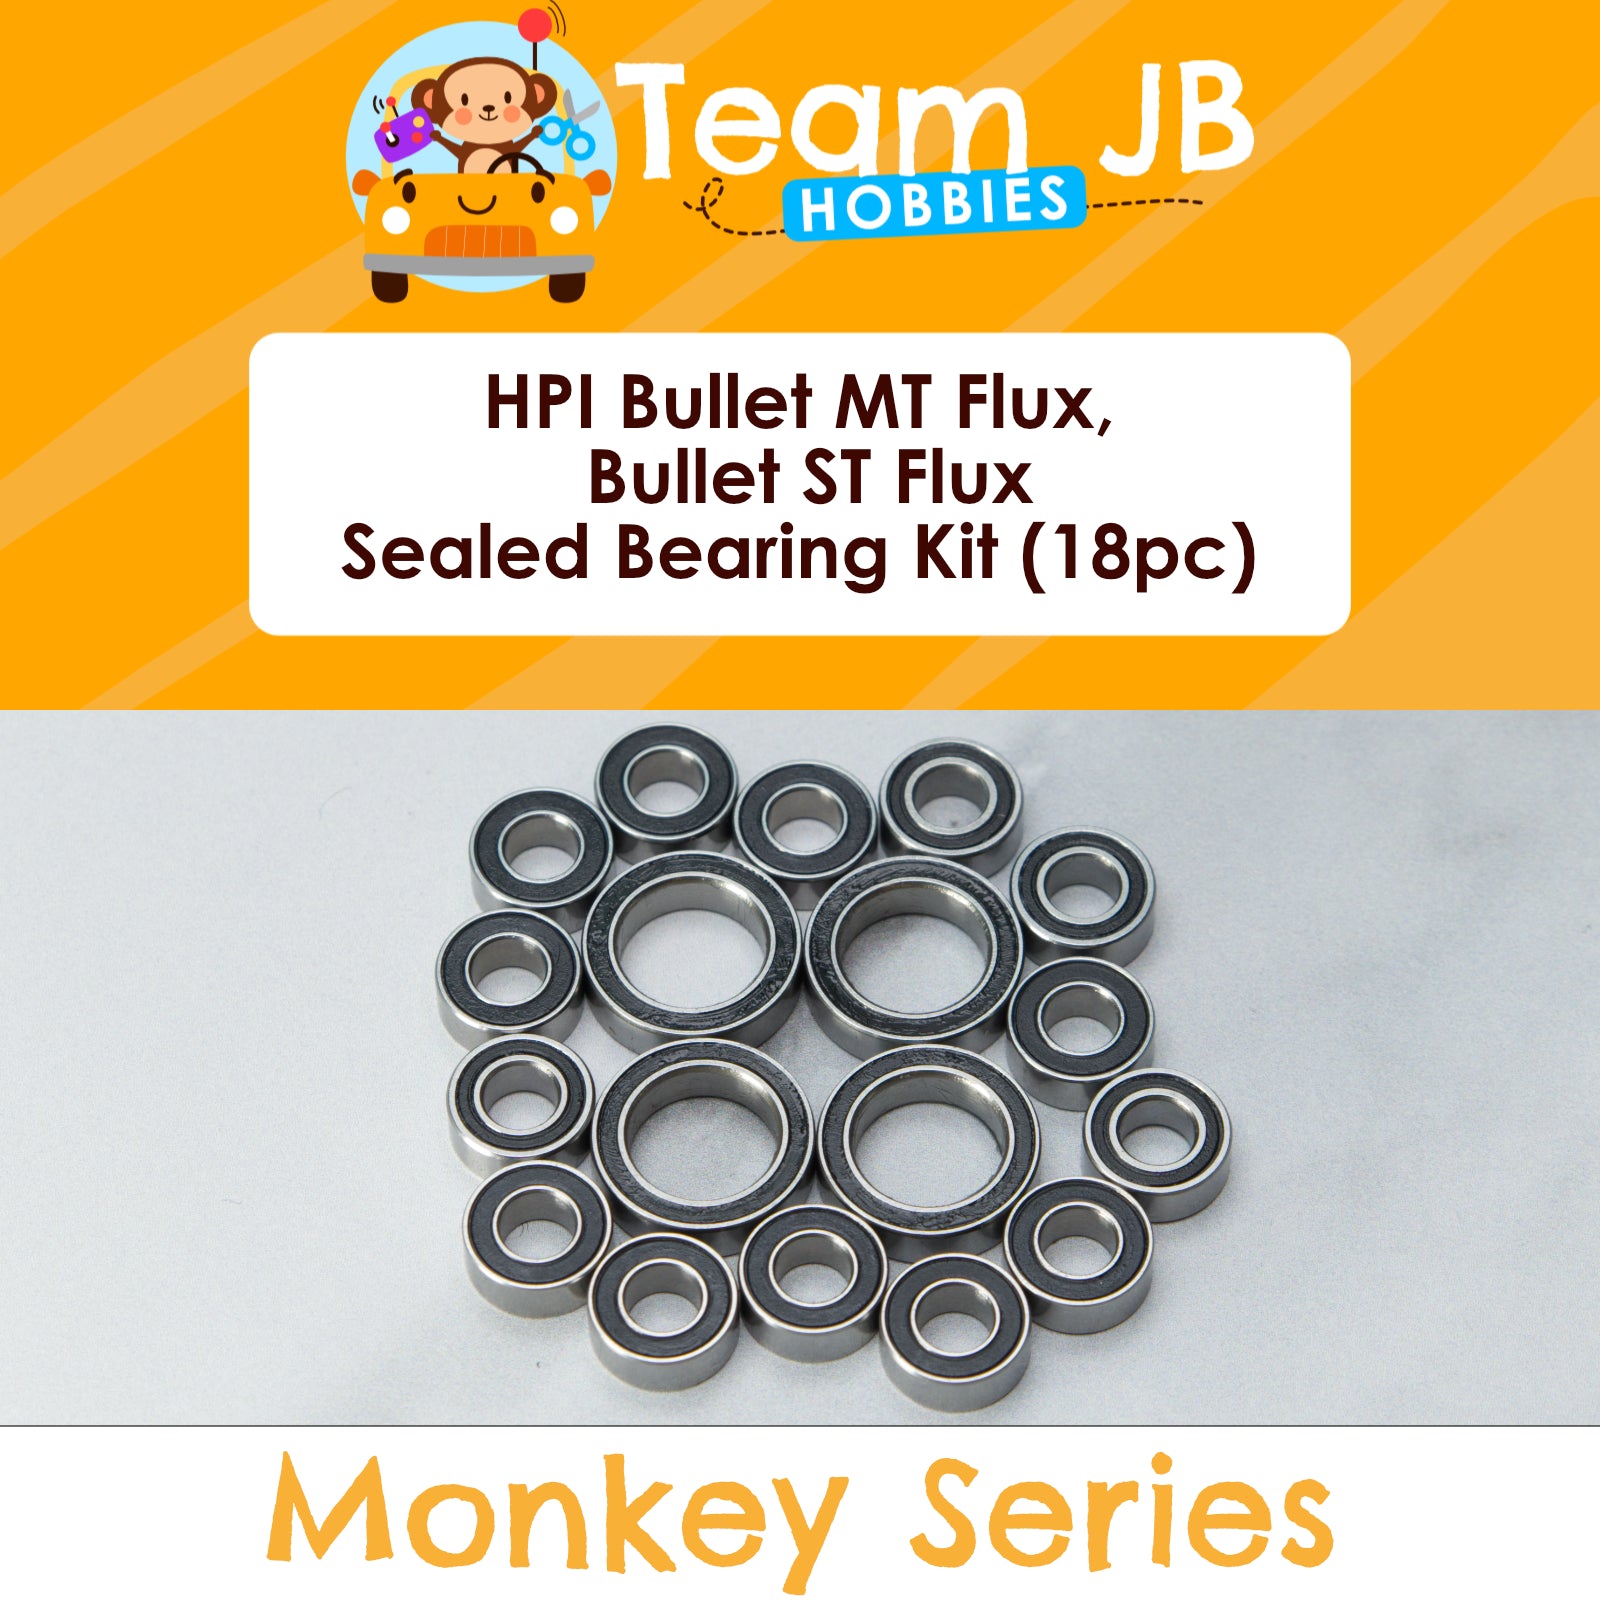 HPI Bullet MT Flux, Bullet ST Flux - Sealed Bearing Kit